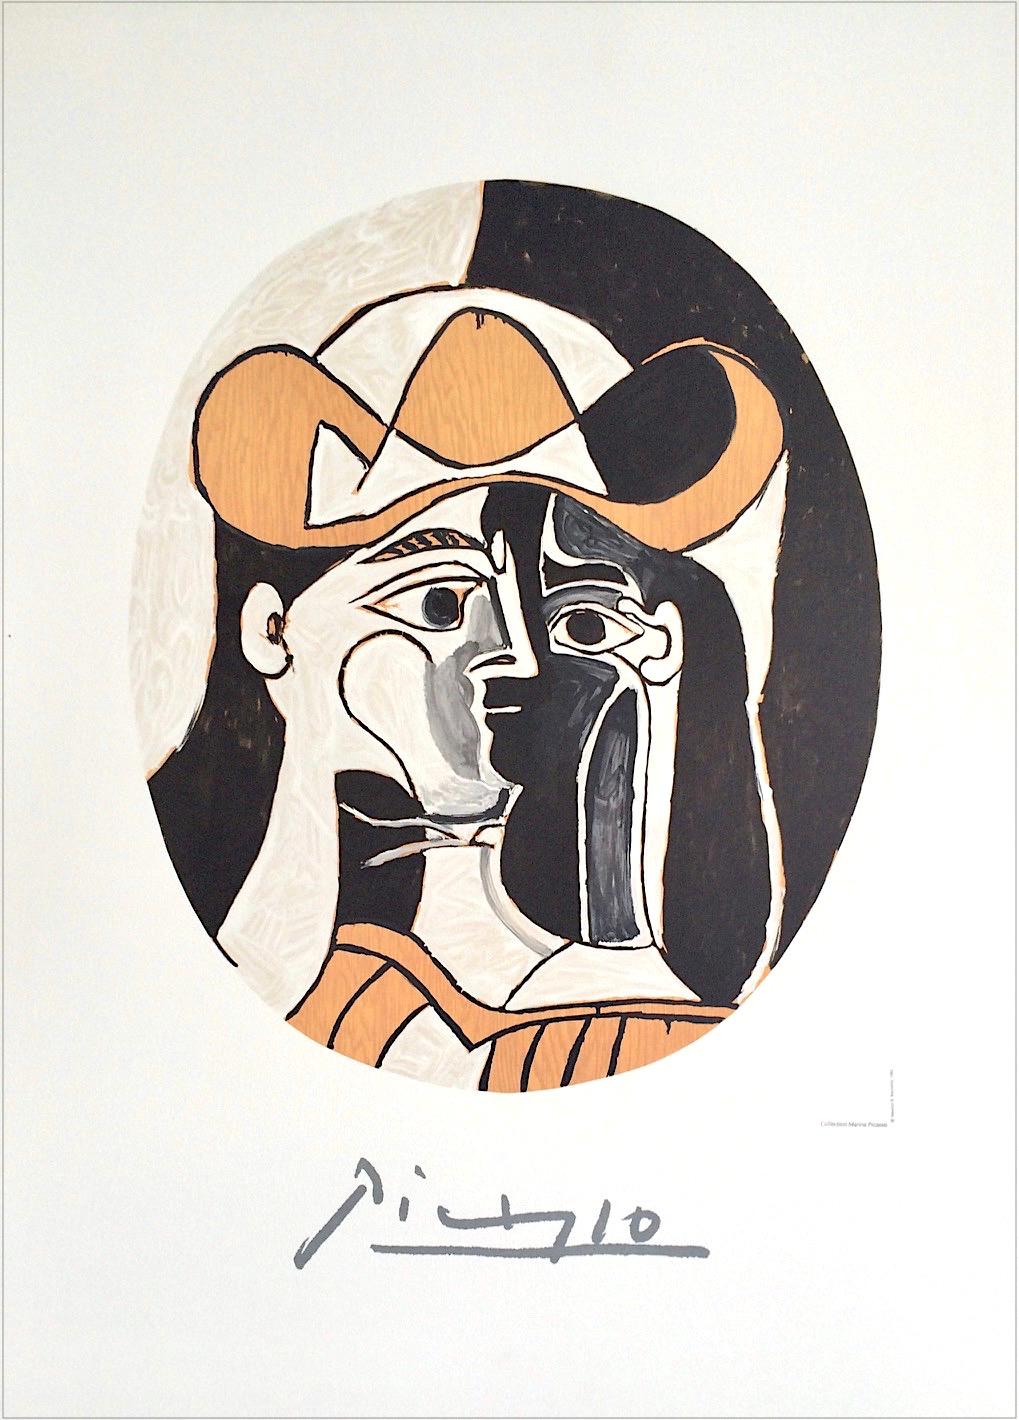 (after) Pablo Picasso Portrait Print - FEMME AU CHAPEAU Lithograph, Abstract Oval Portrait, Woman Cowboy Hat Black Eyes